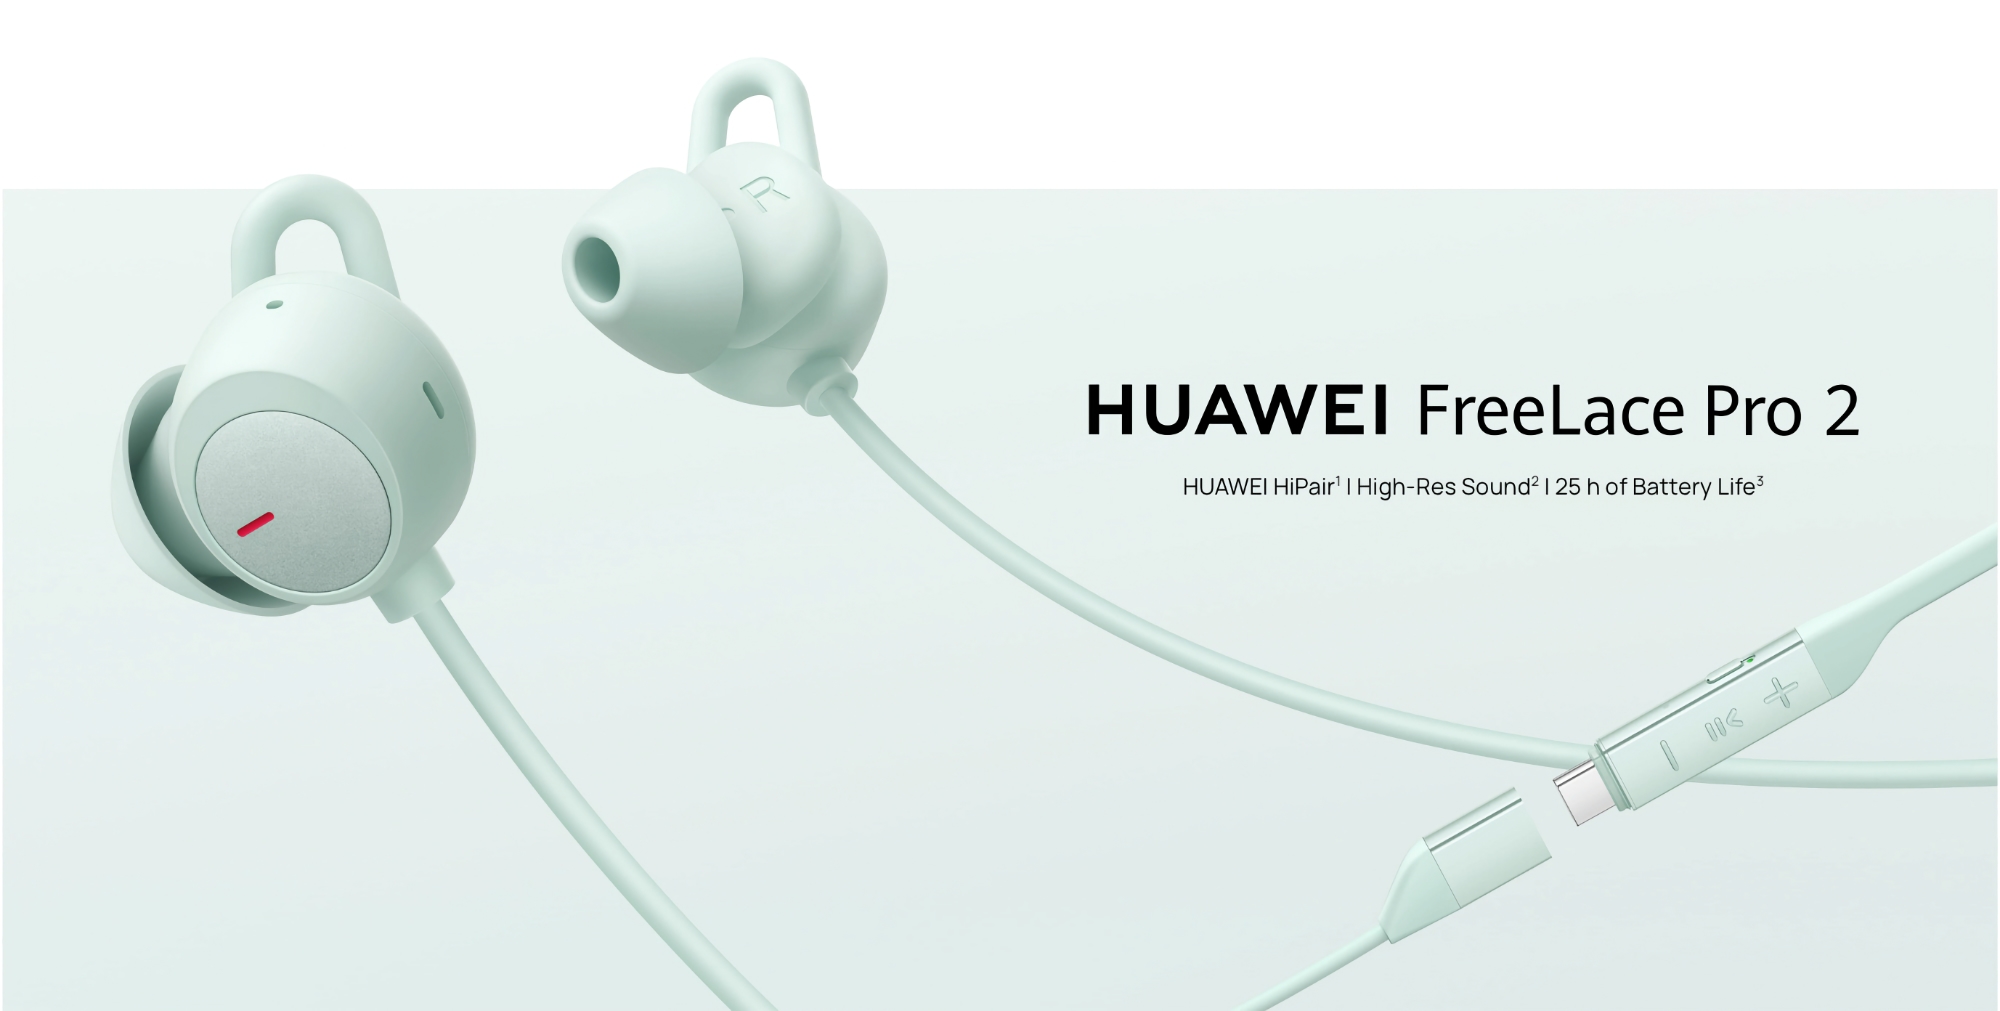 Huawei ha lanciato sul mercato mondiale il FreeLace Pro 2 con ANC e fino a 25 ore di autonomia.